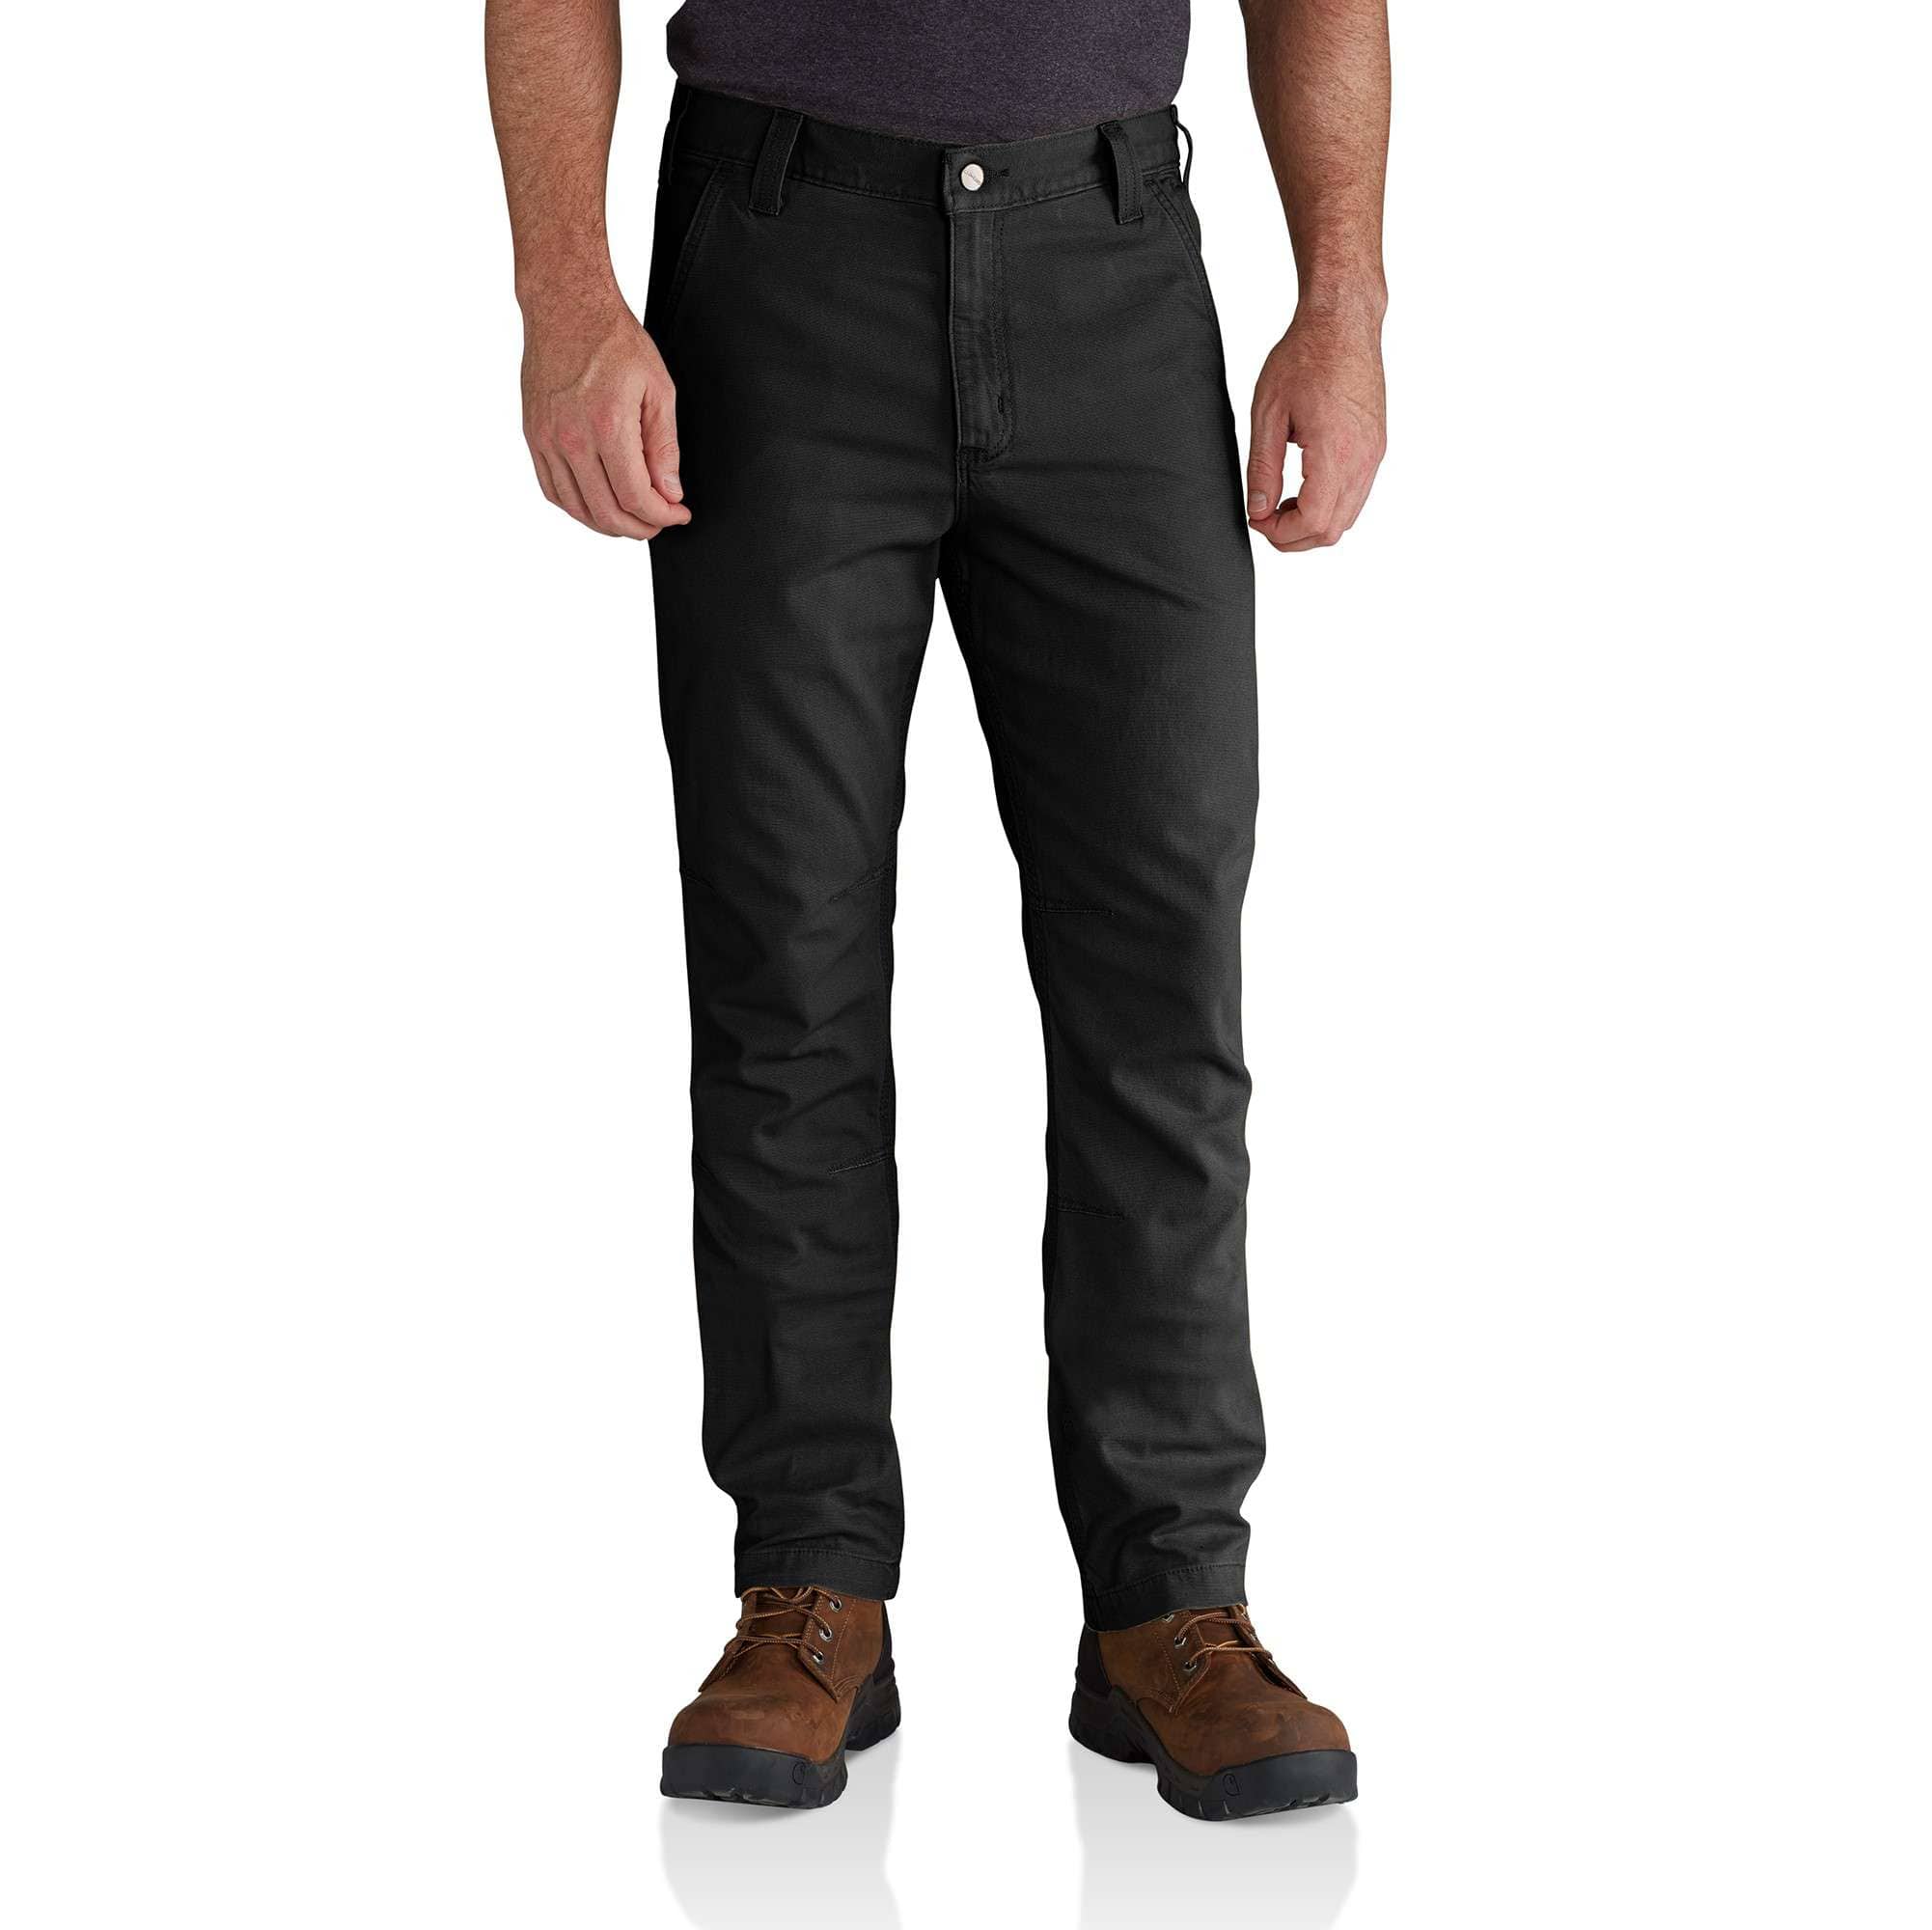 Buy Carhartt Men's FR Rugged Flex Slim Fit 5 Pocket Jean by Carhartt